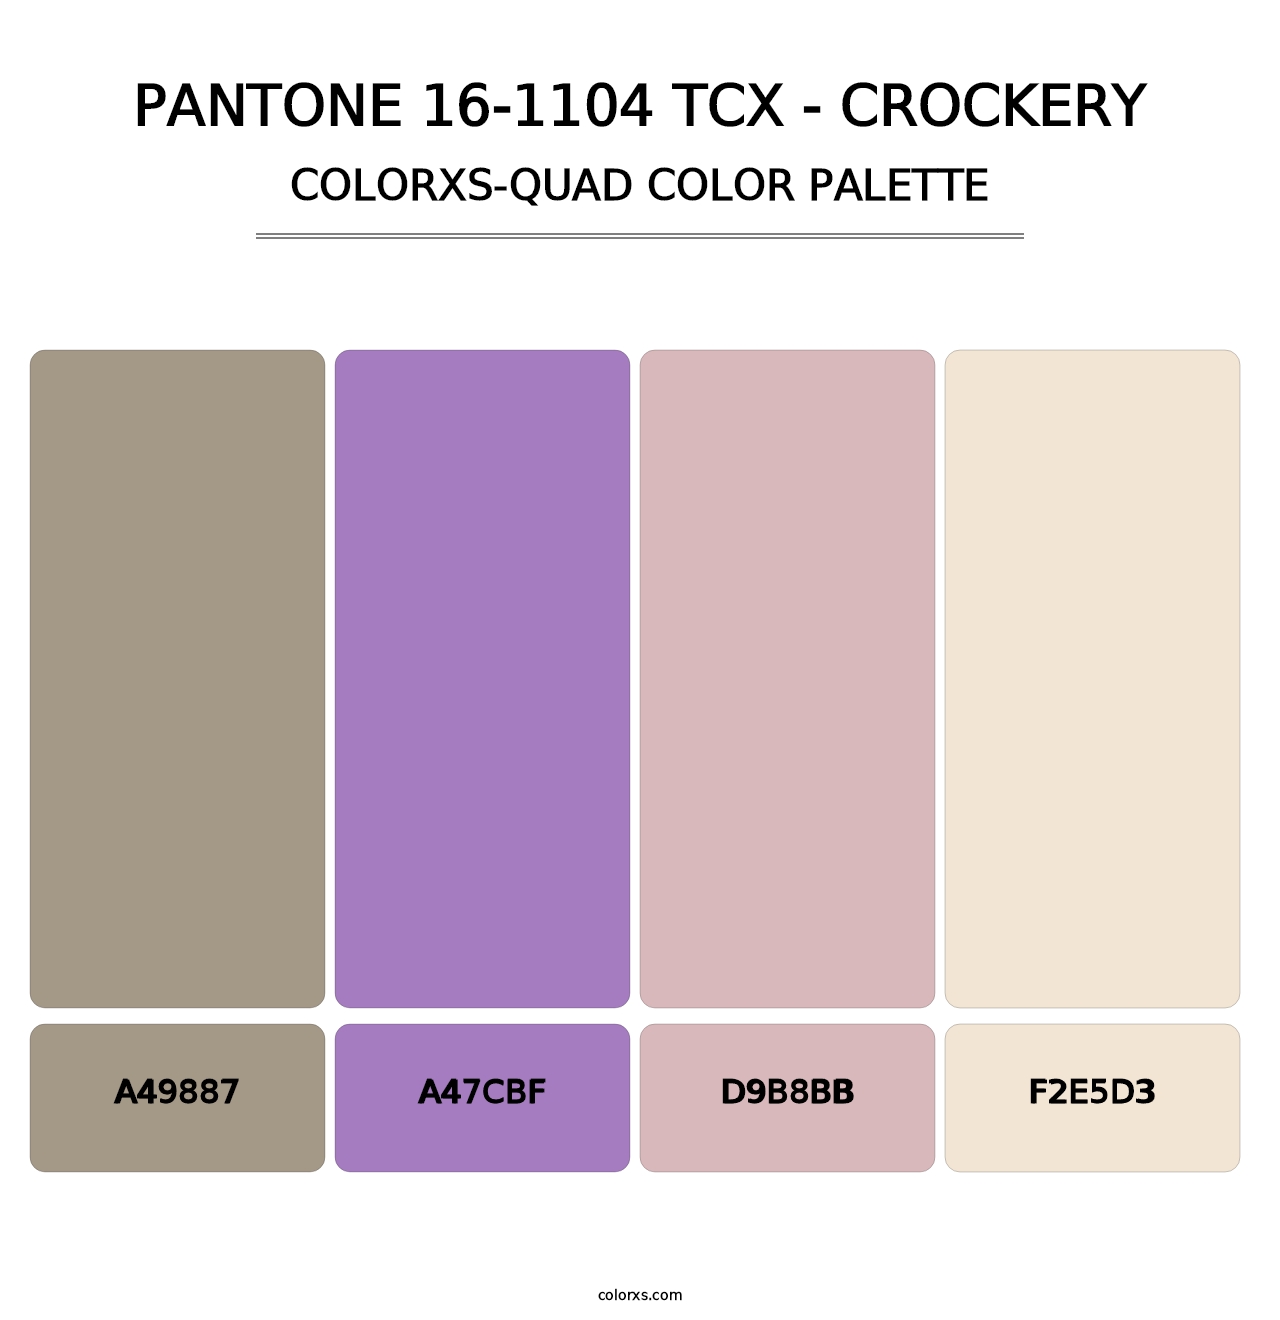 PANTONE 16-1104 TCX - Crockery - Colorxs Quad Palette